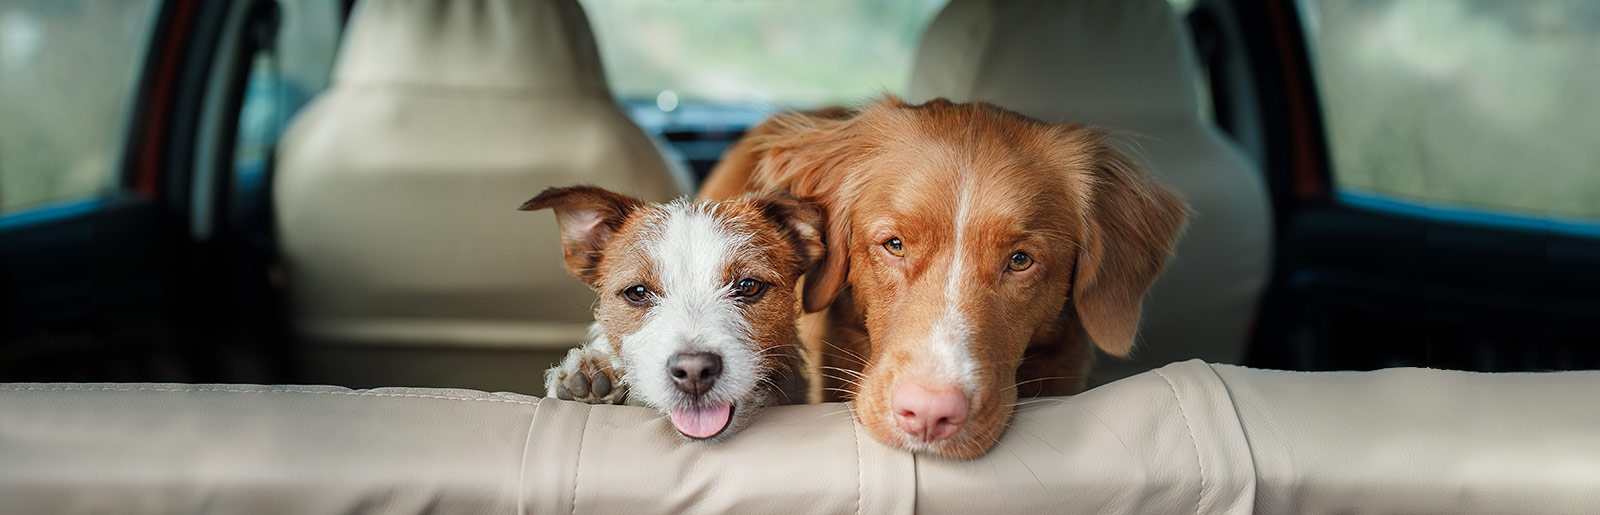 Wir geben Ihnen Tipps zum Thema Reisen mit Hund